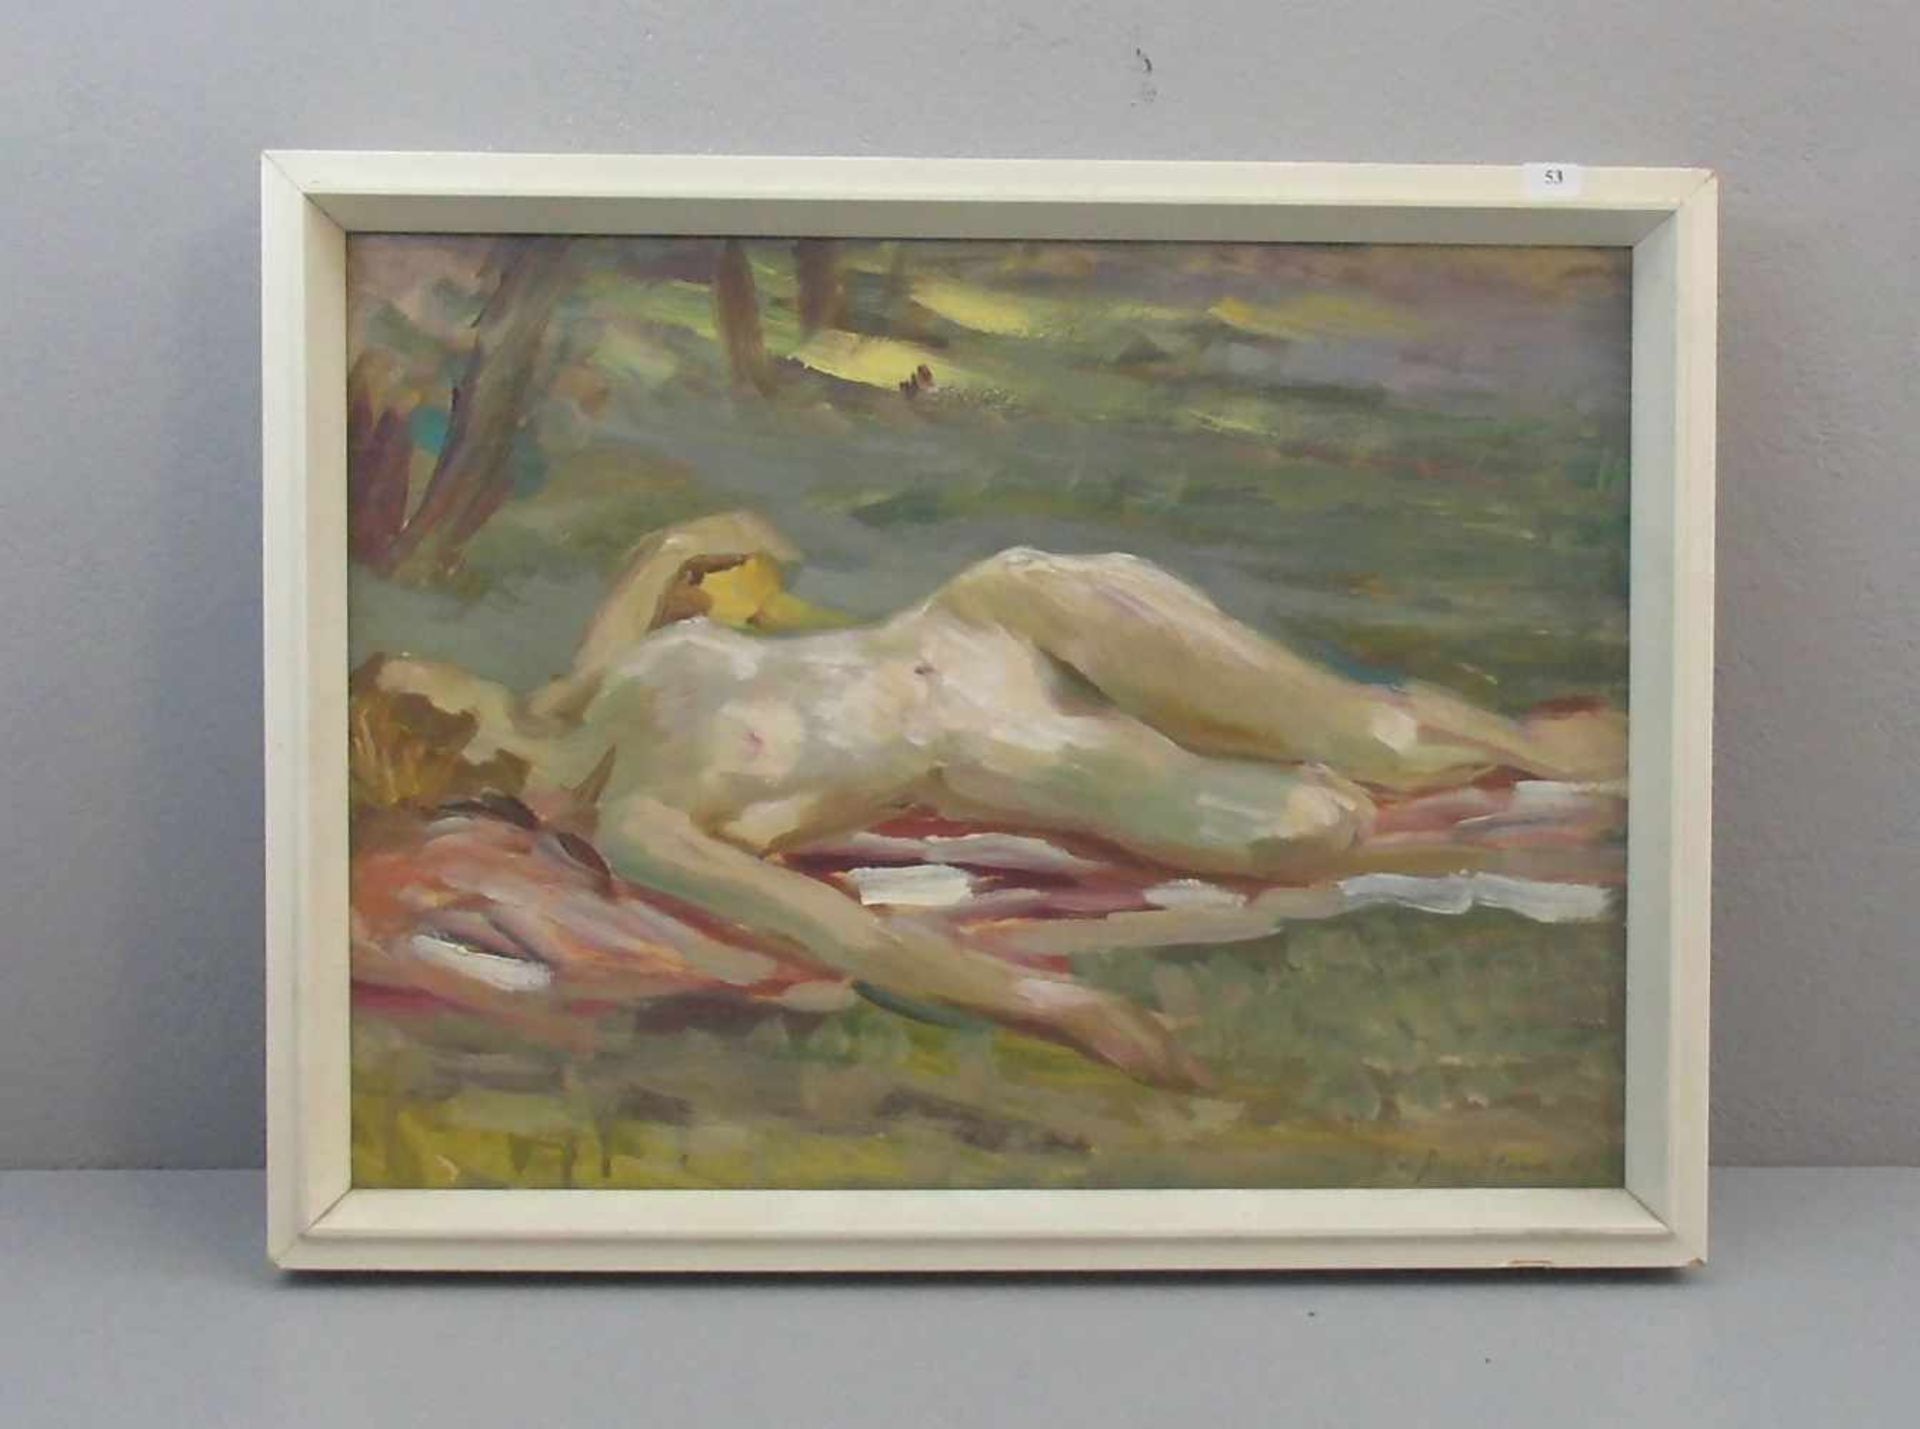 VON ASSAULENKO, ALEXEJ (Kiew 1913-1989 Kiel), Gemälde / painting: "Liegender weiblicher Akt /